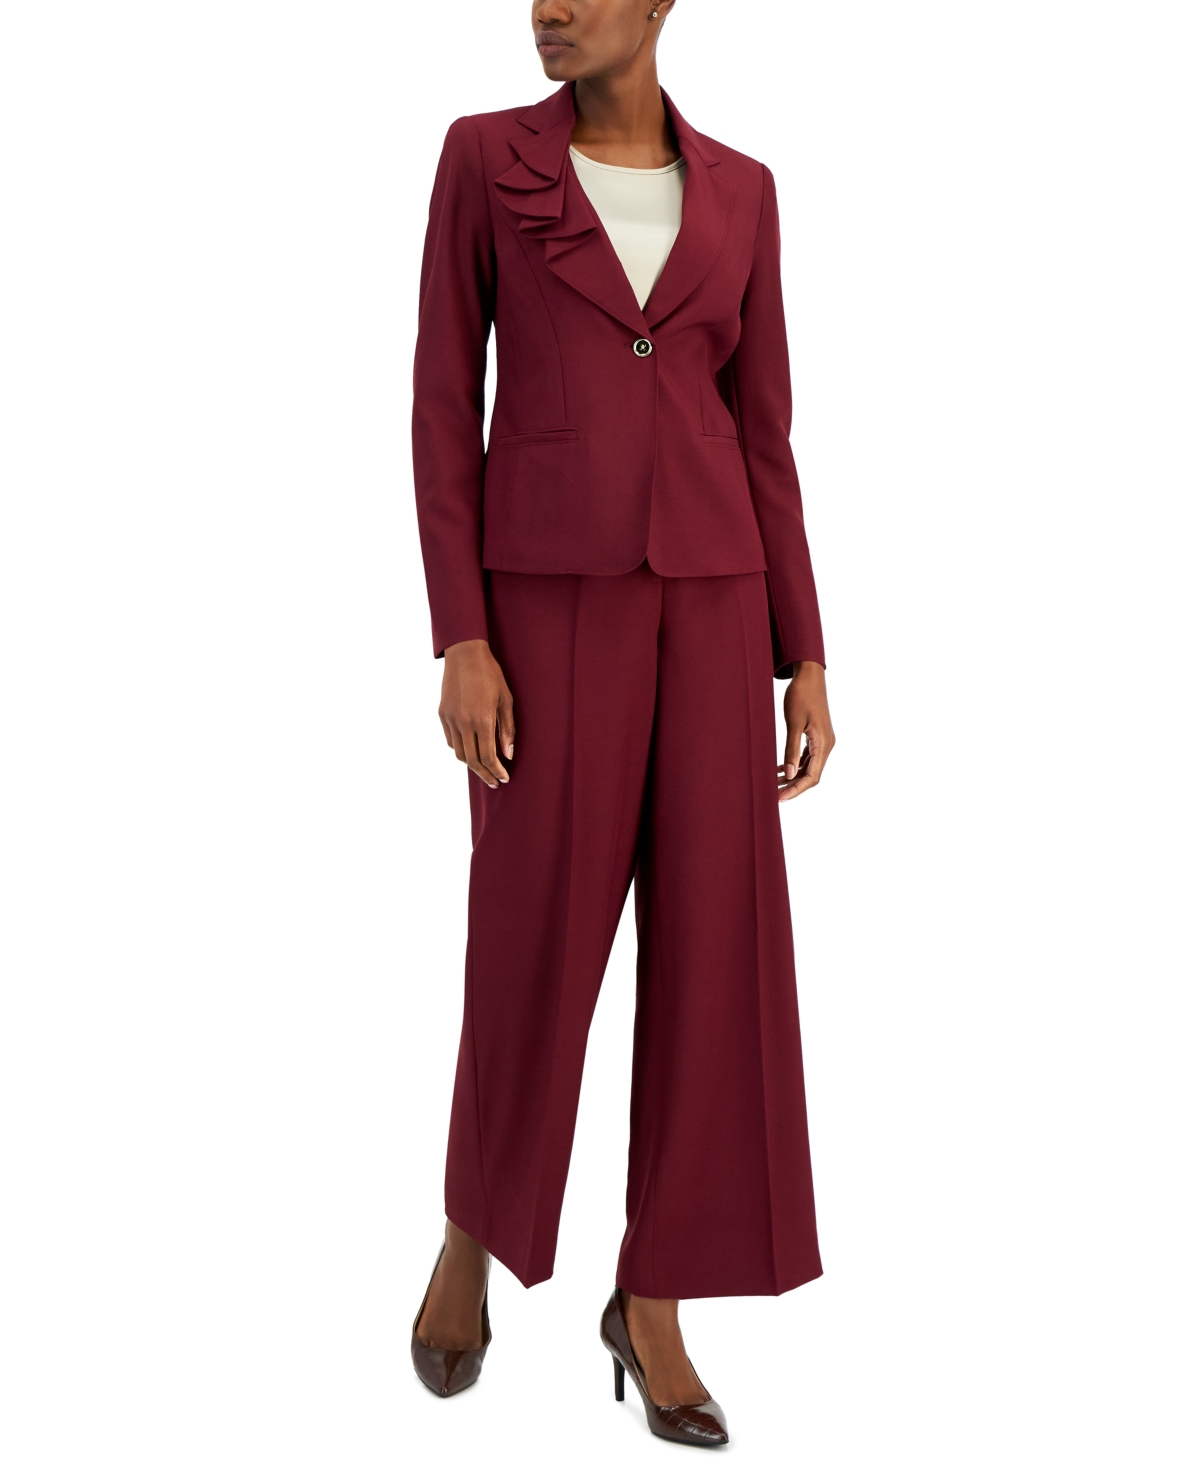 Nipon Boutique Women's Asymmetrical Ruffled One-button Jacket & Wide-leg Pant Suit In Bordeaux